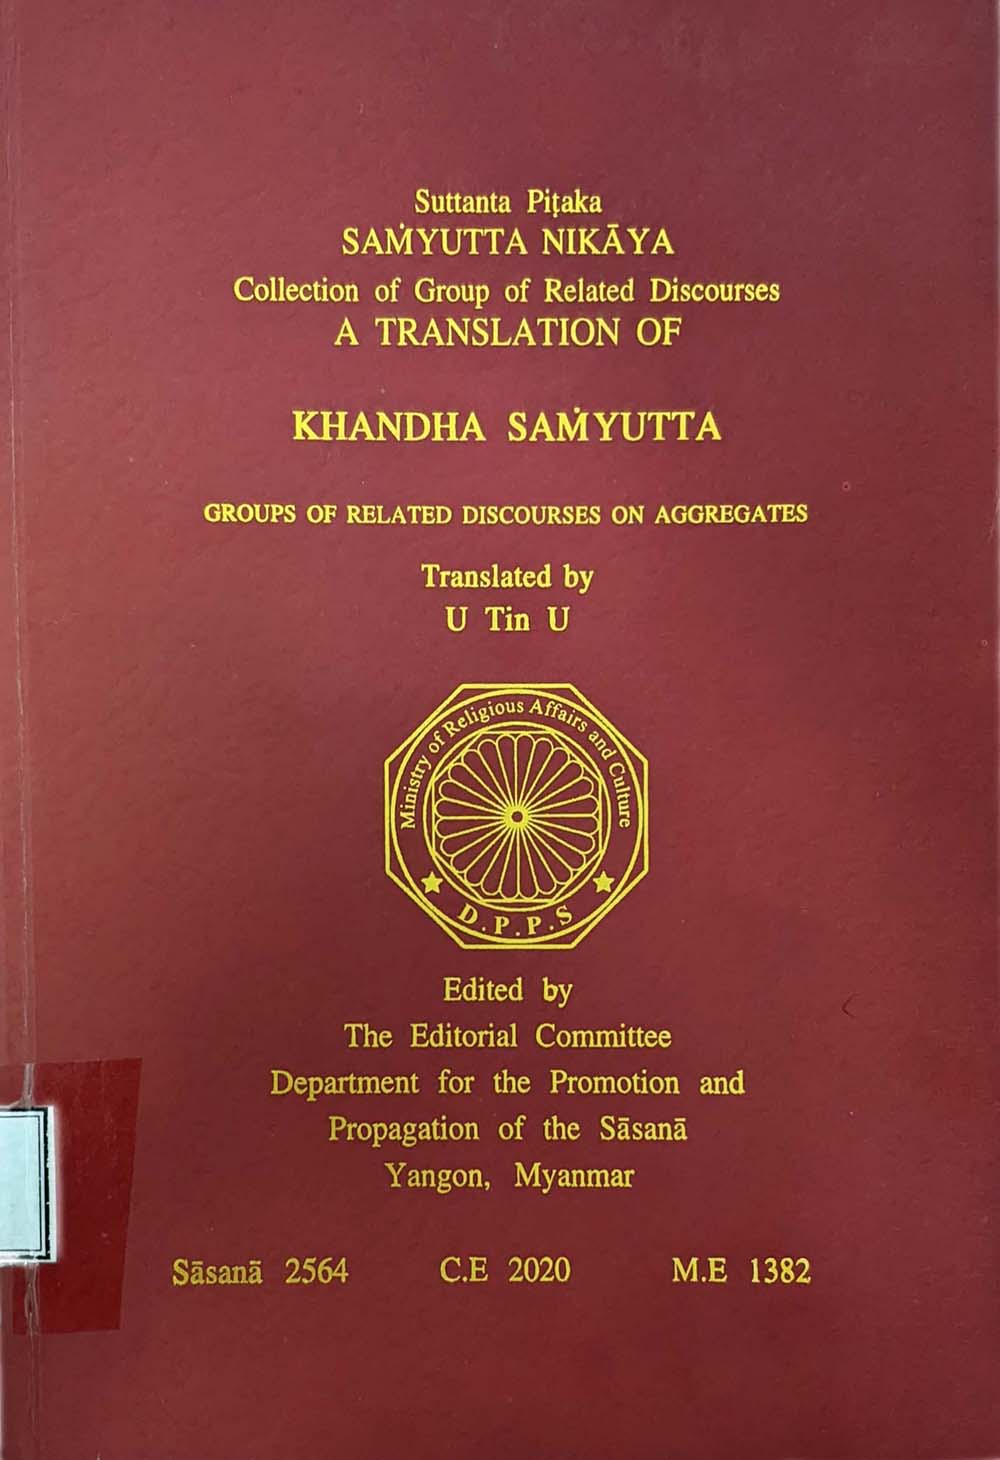 Khandha Samyutta